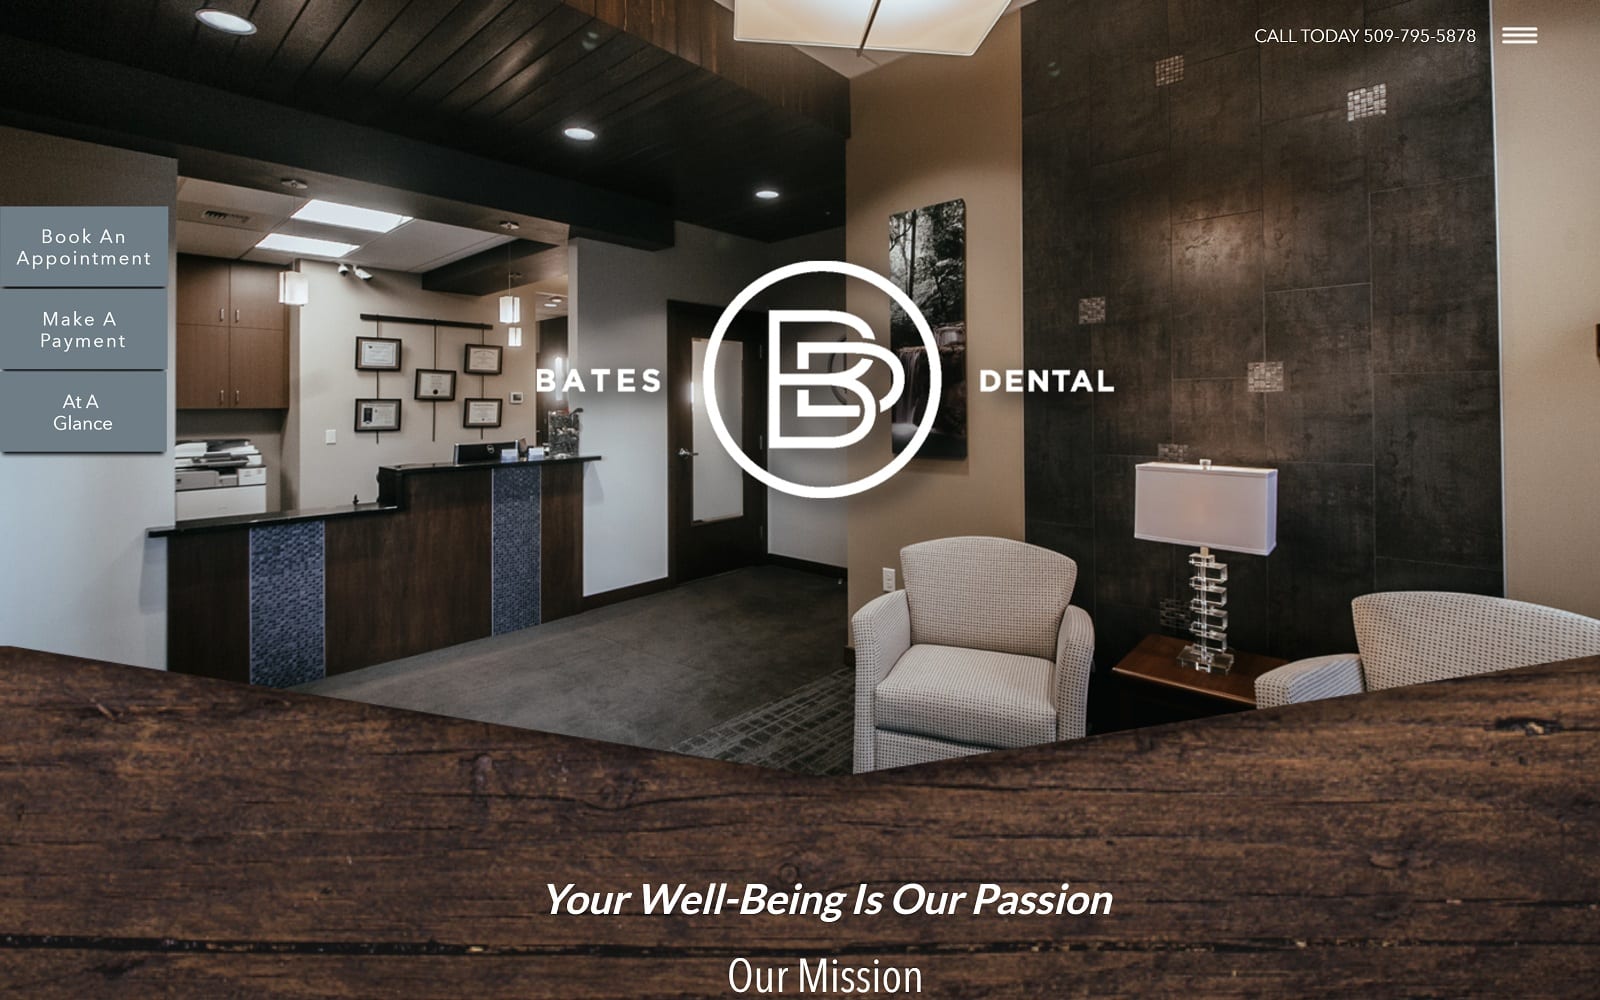 Bates Dental Website Designed By O360®